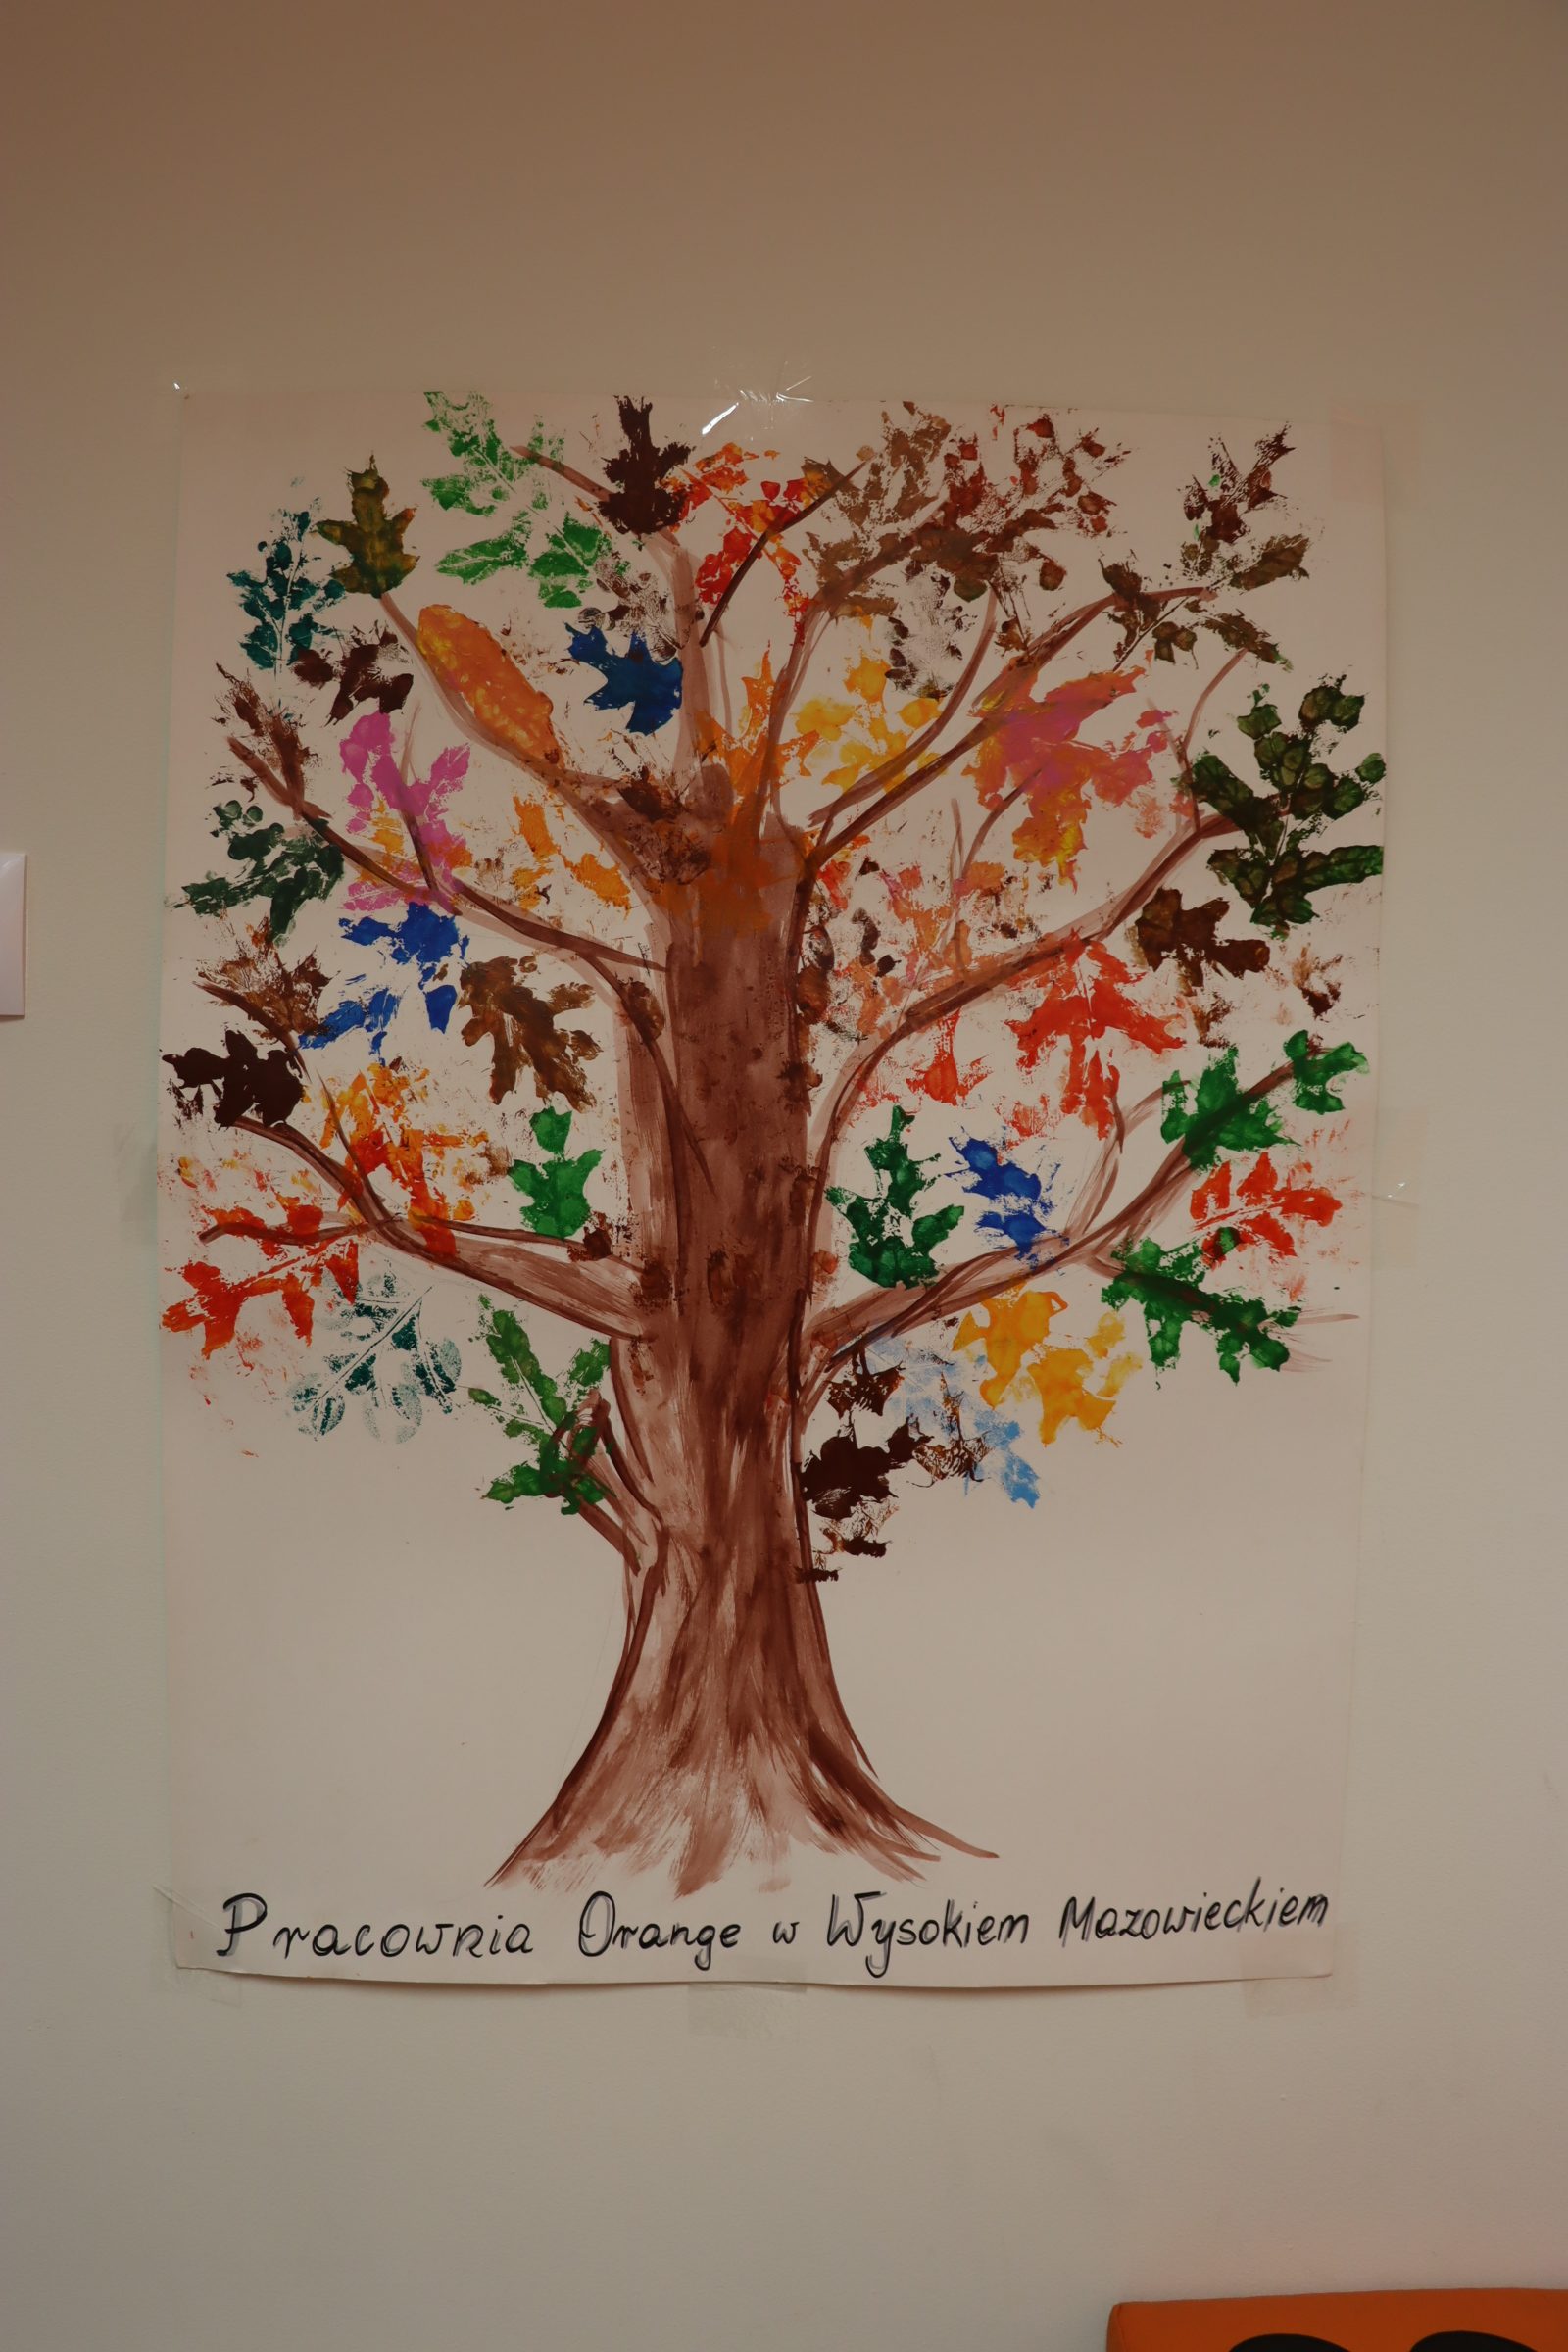 Zdjęcie pracy plastycznej, którą stworzyły dzieci wraz z animatorką. Jest to drzewo z kolorowymi liśćmi. Pod spodem znajduje się napis Pracownia Orange w Wysokim Mazowieckiem.